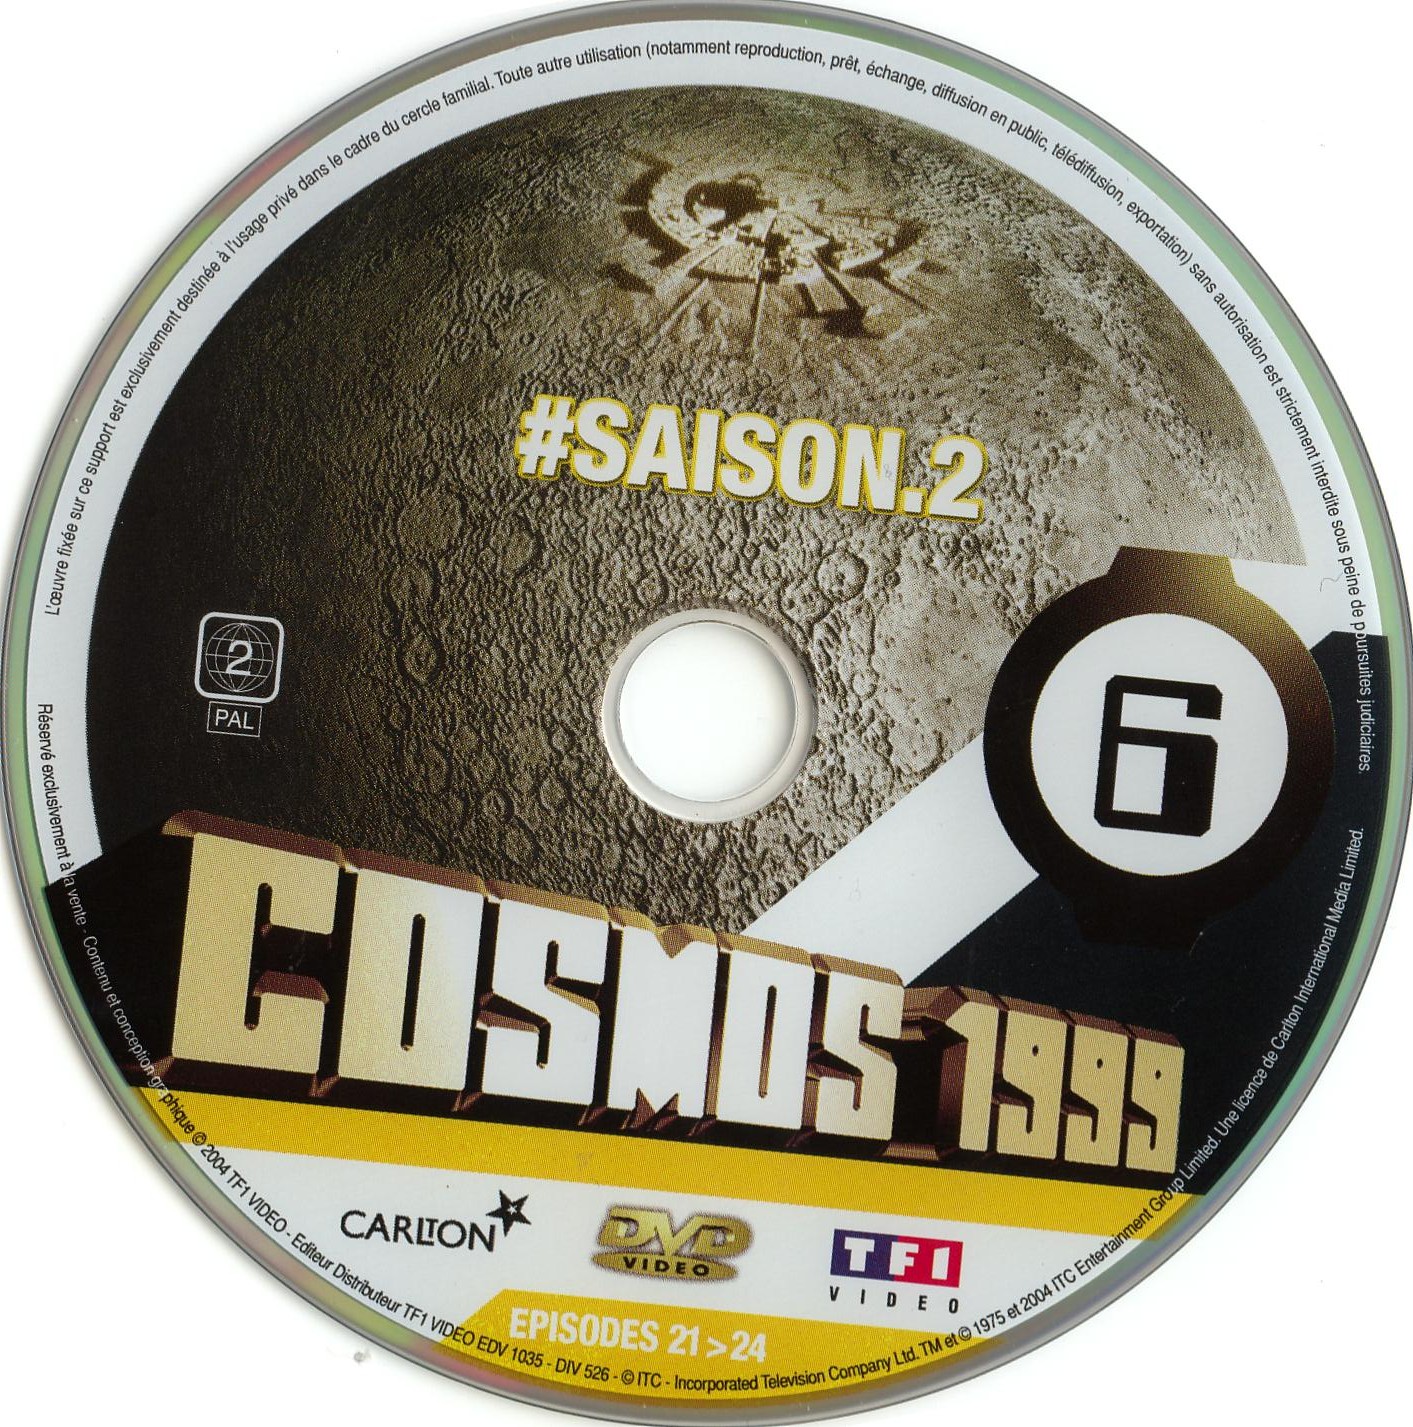 Cosmos 1999 saison 2 dvd 6